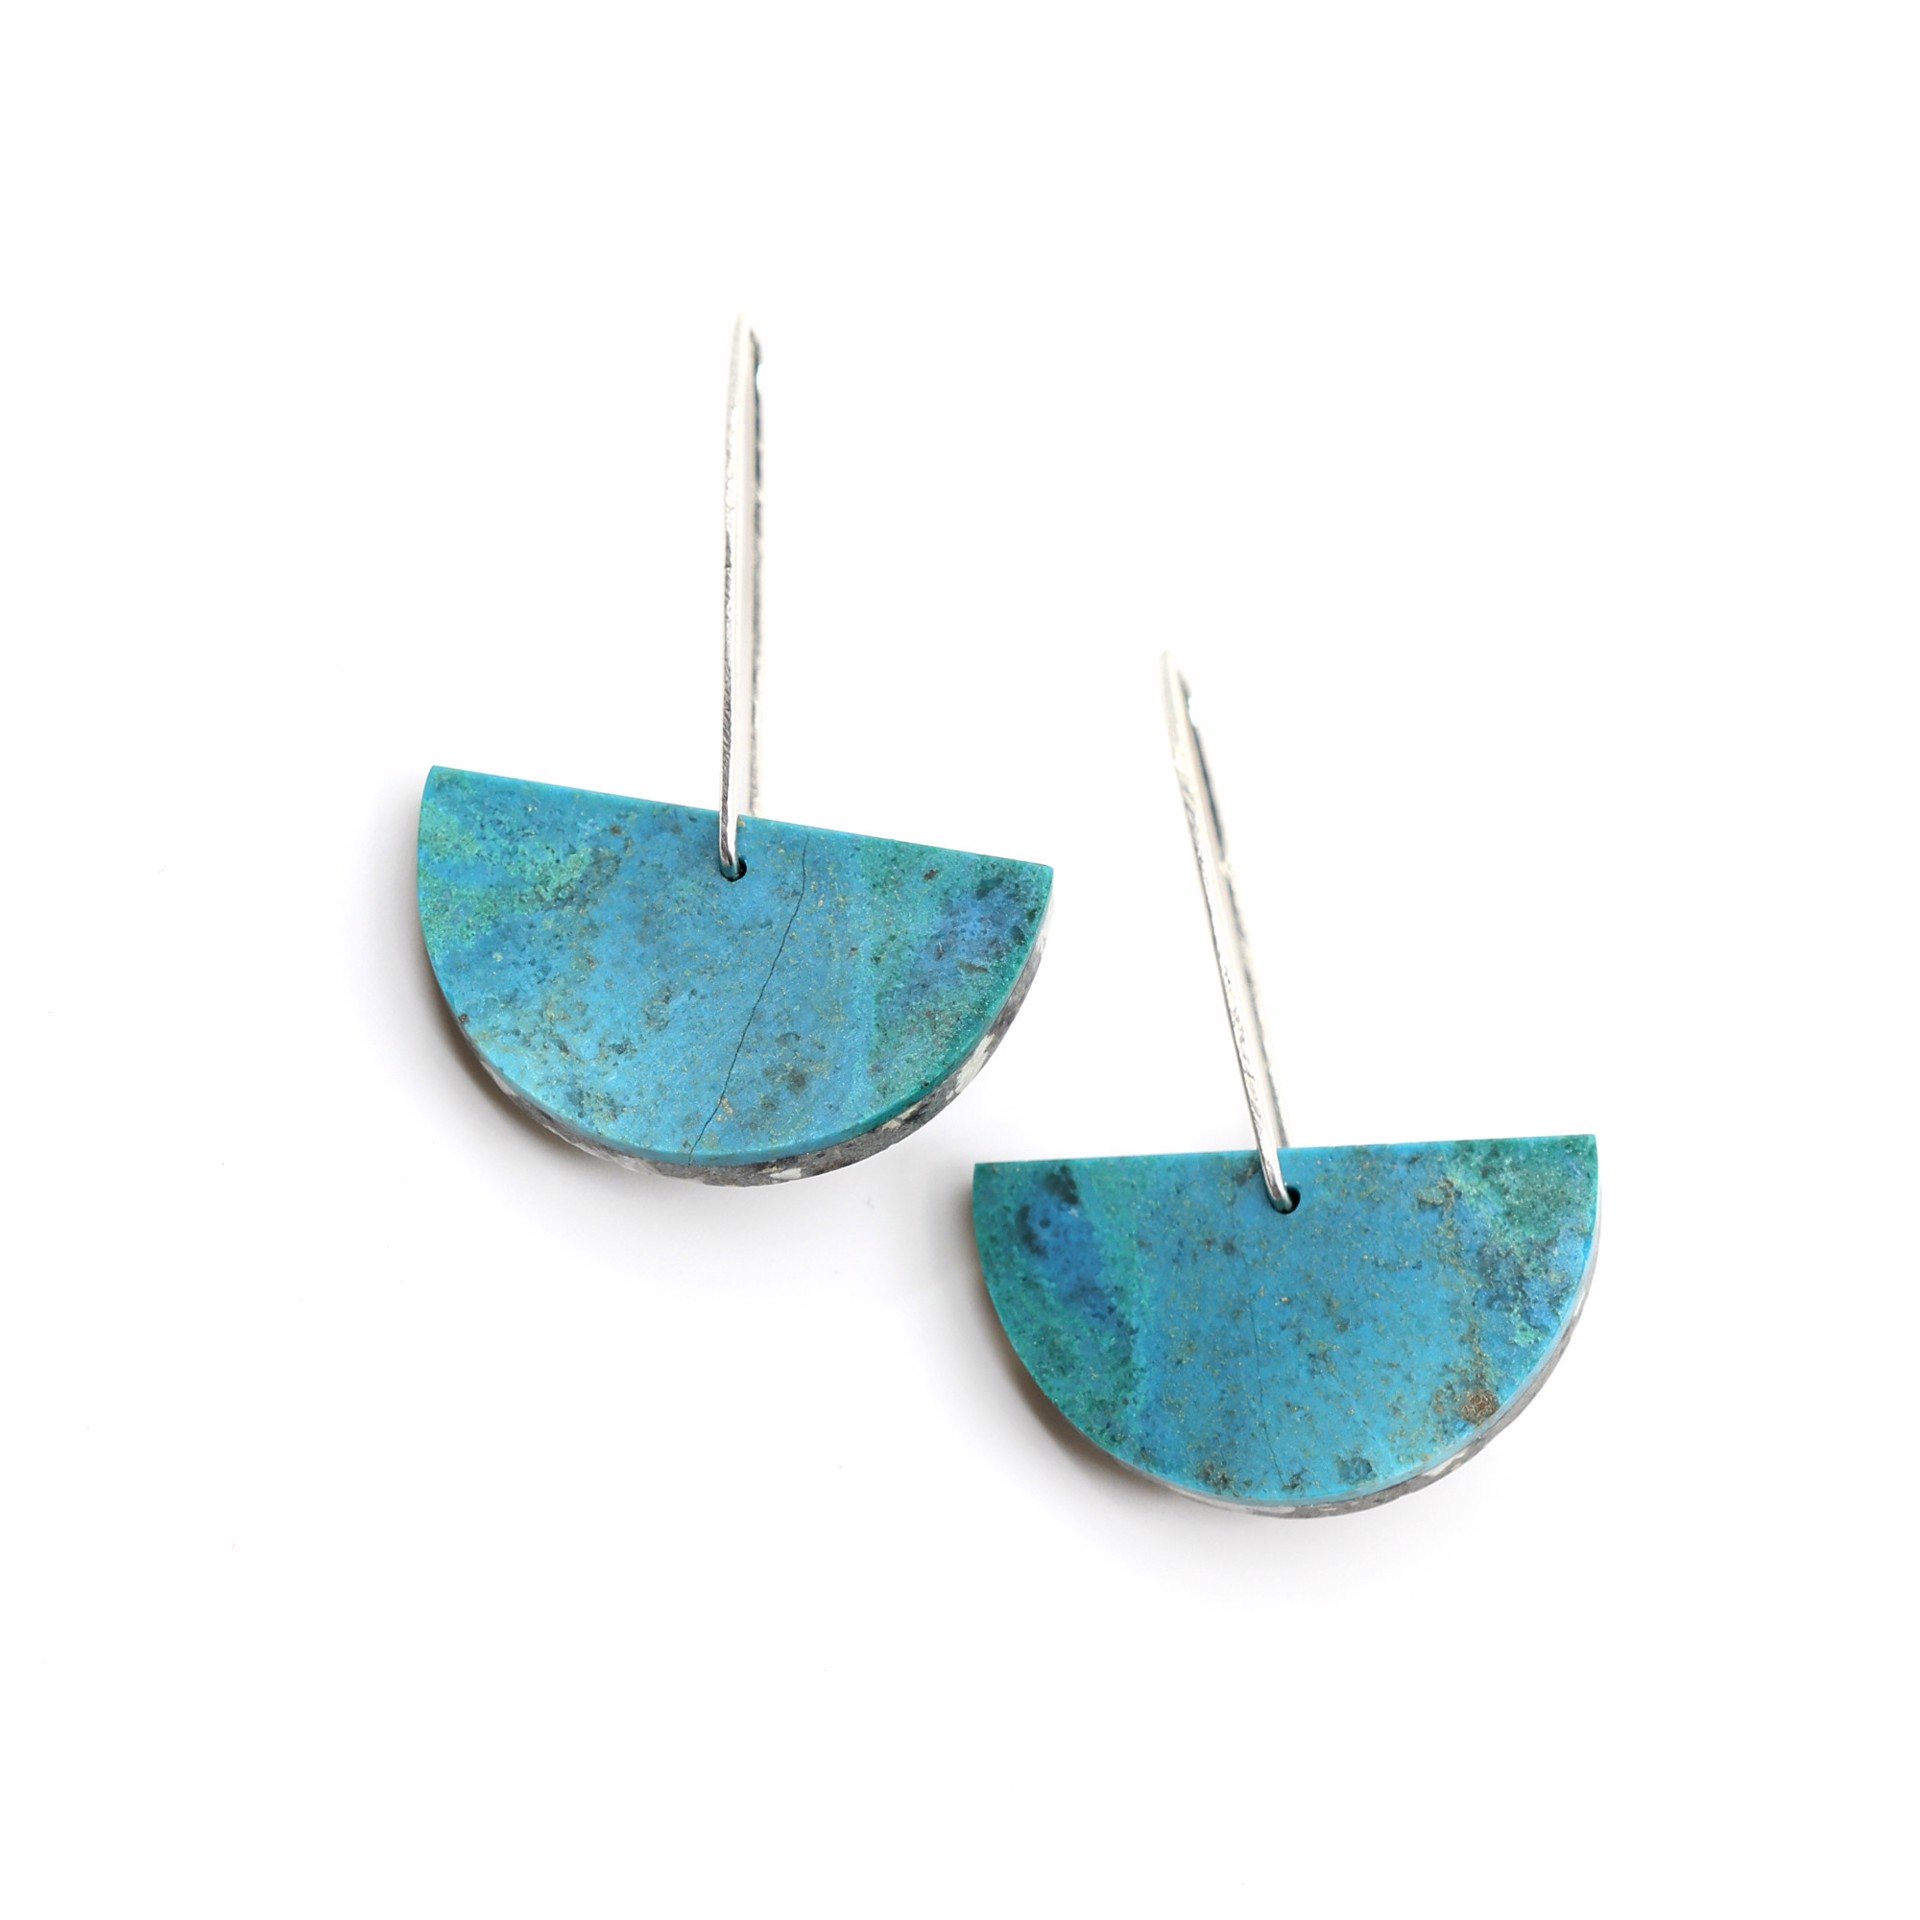 Two Stone Earrings by Alison Jean Cole